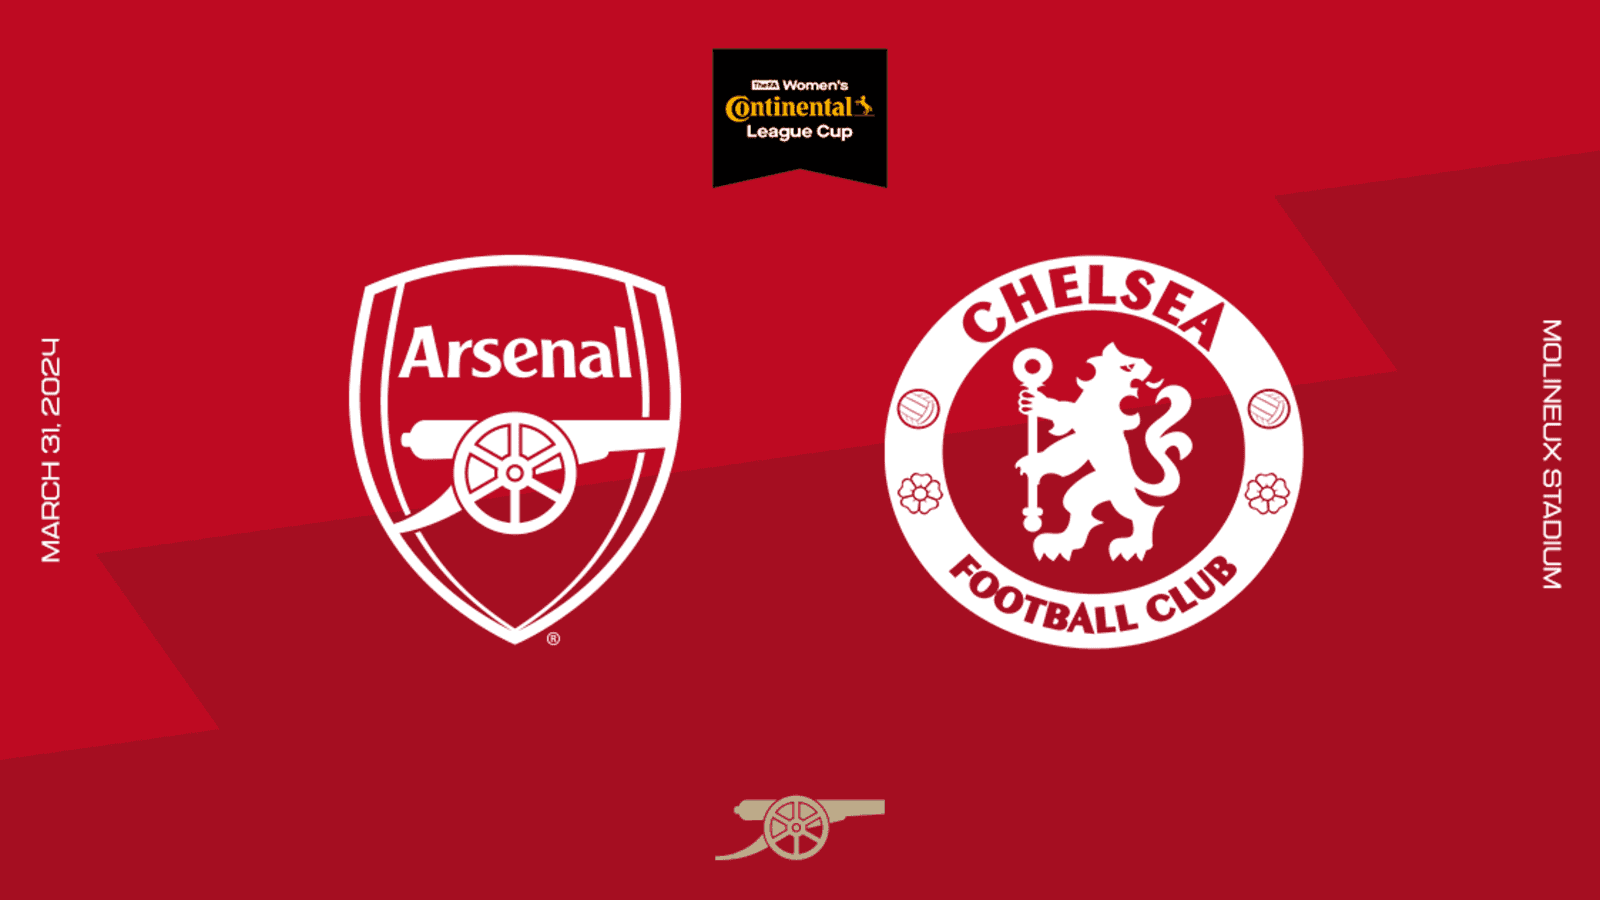 Recenzja: Finał Pucharu Conte – Arsenal kontra Chelsea |  Podgląd meczu |  Aktualności